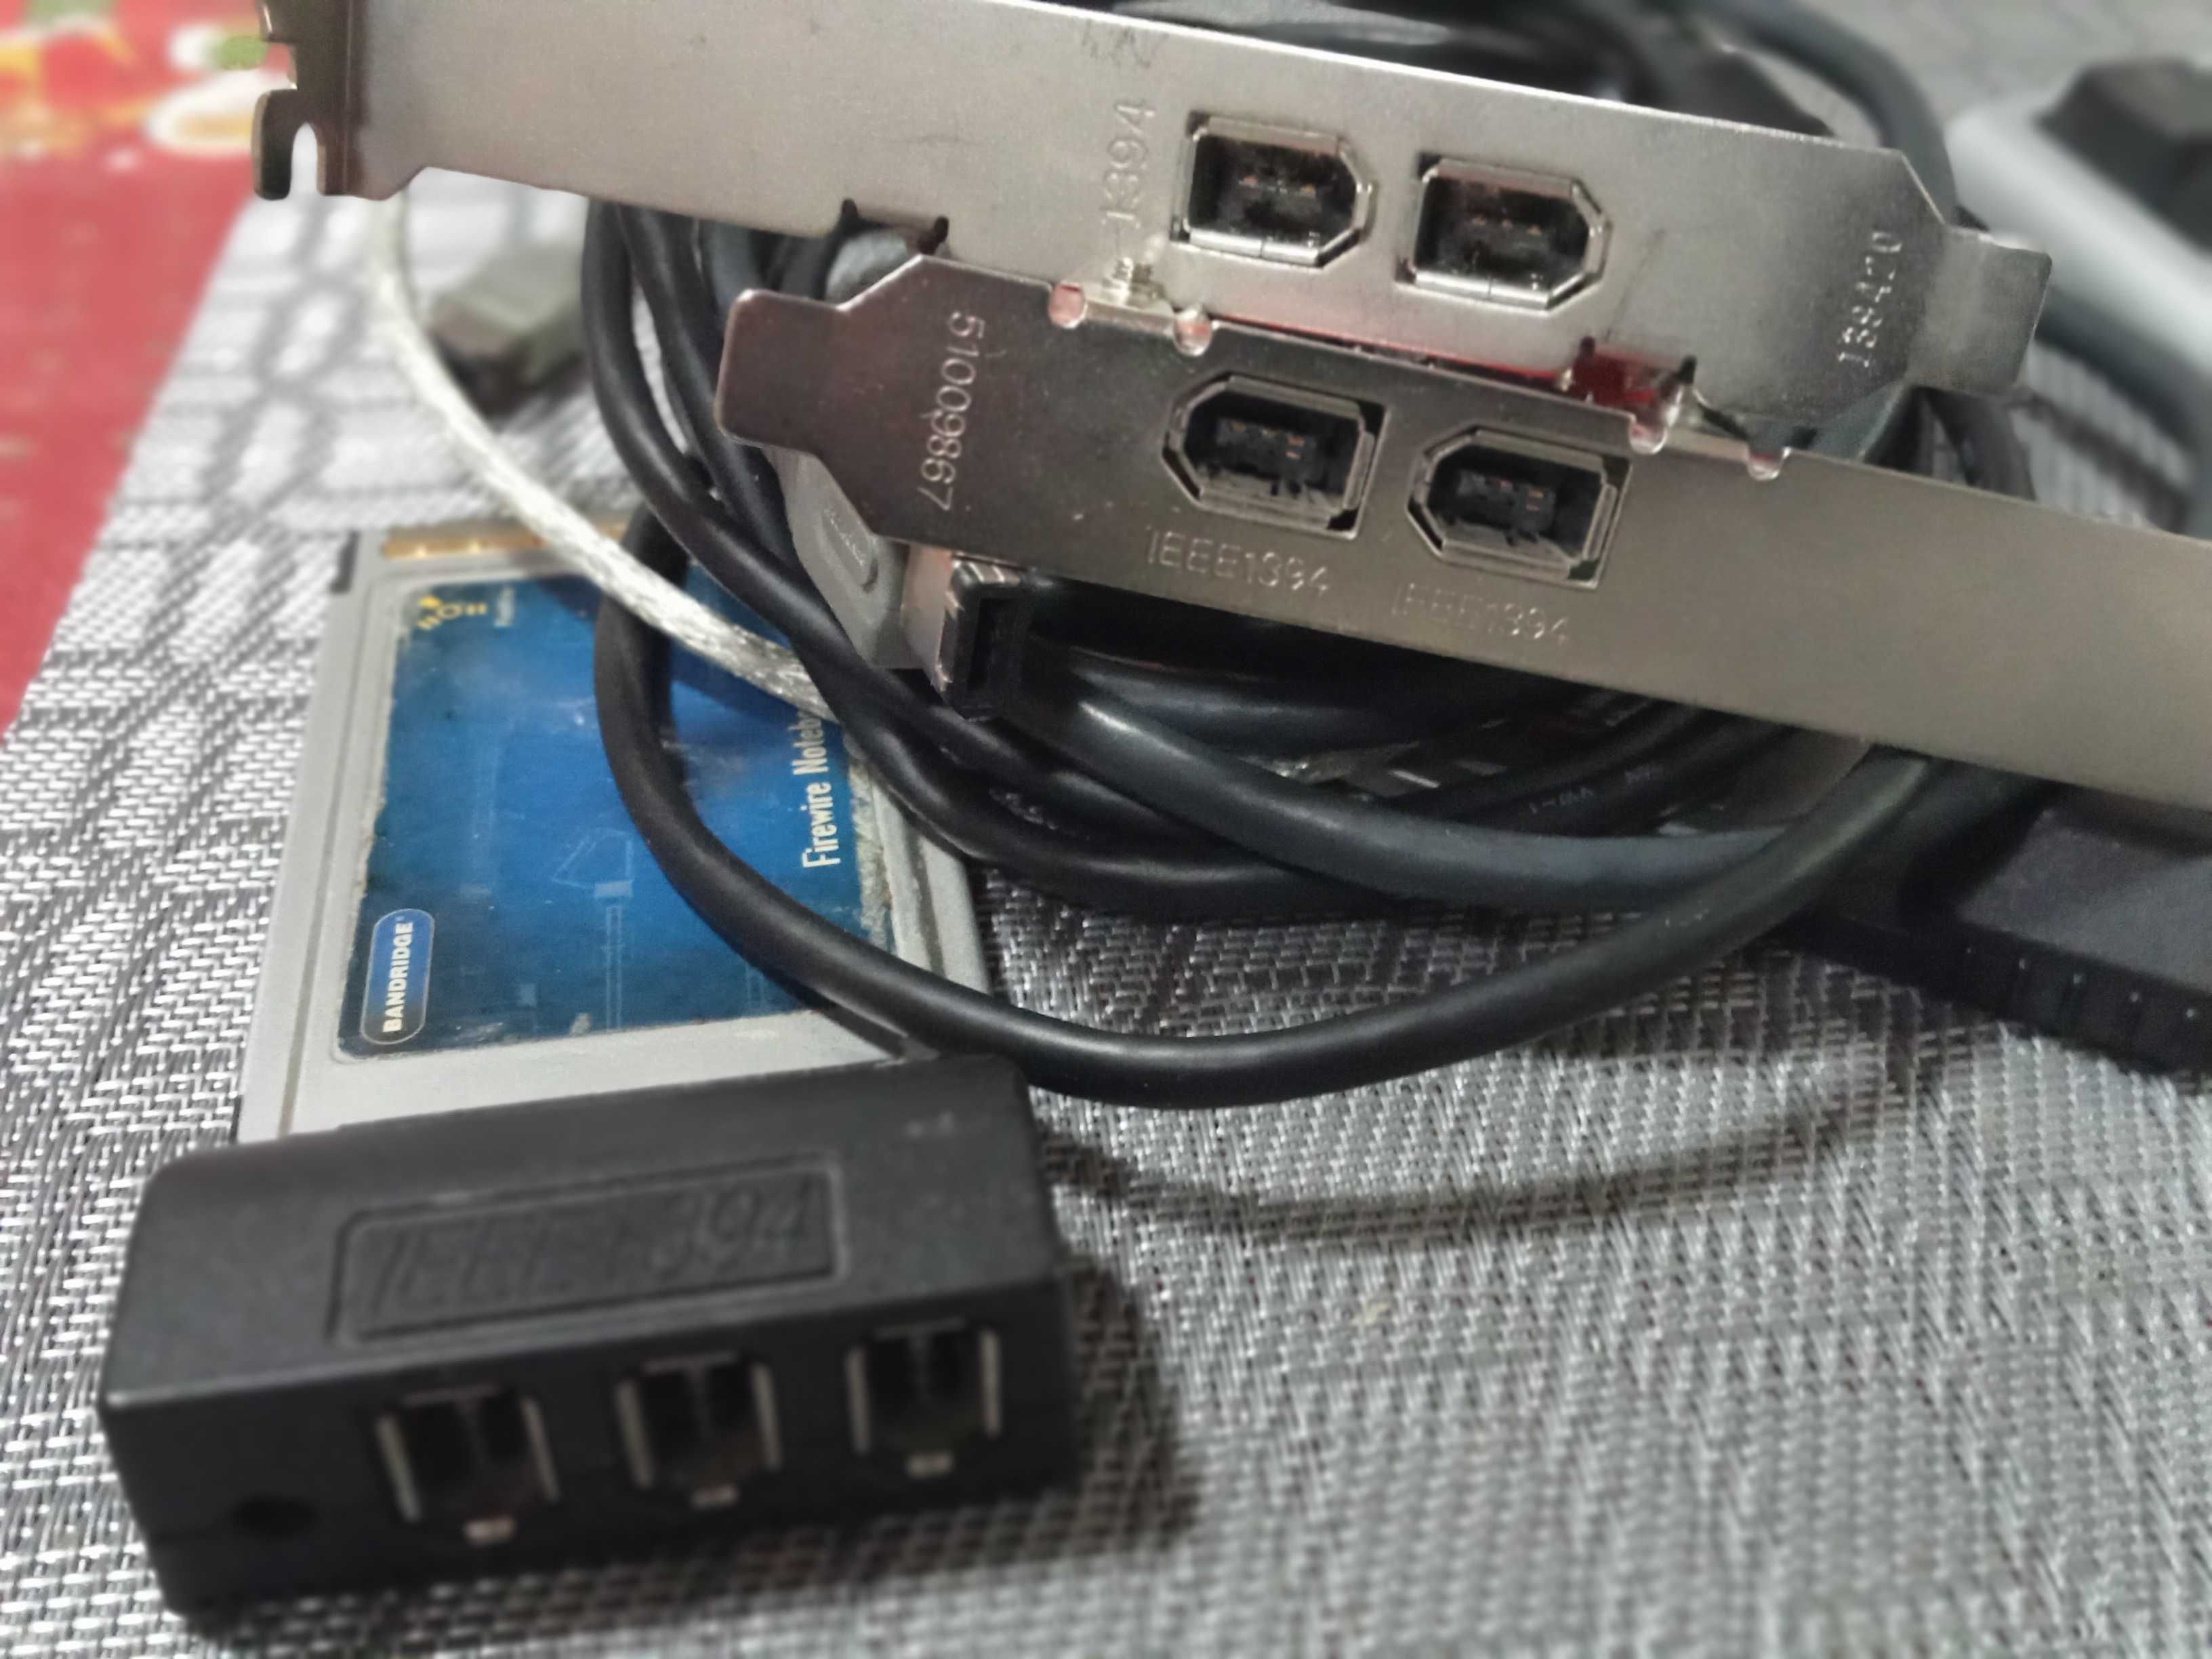 M-audio 410 firewire cu adaptoare pci si pcmcia+cabluri, schimb cu usb